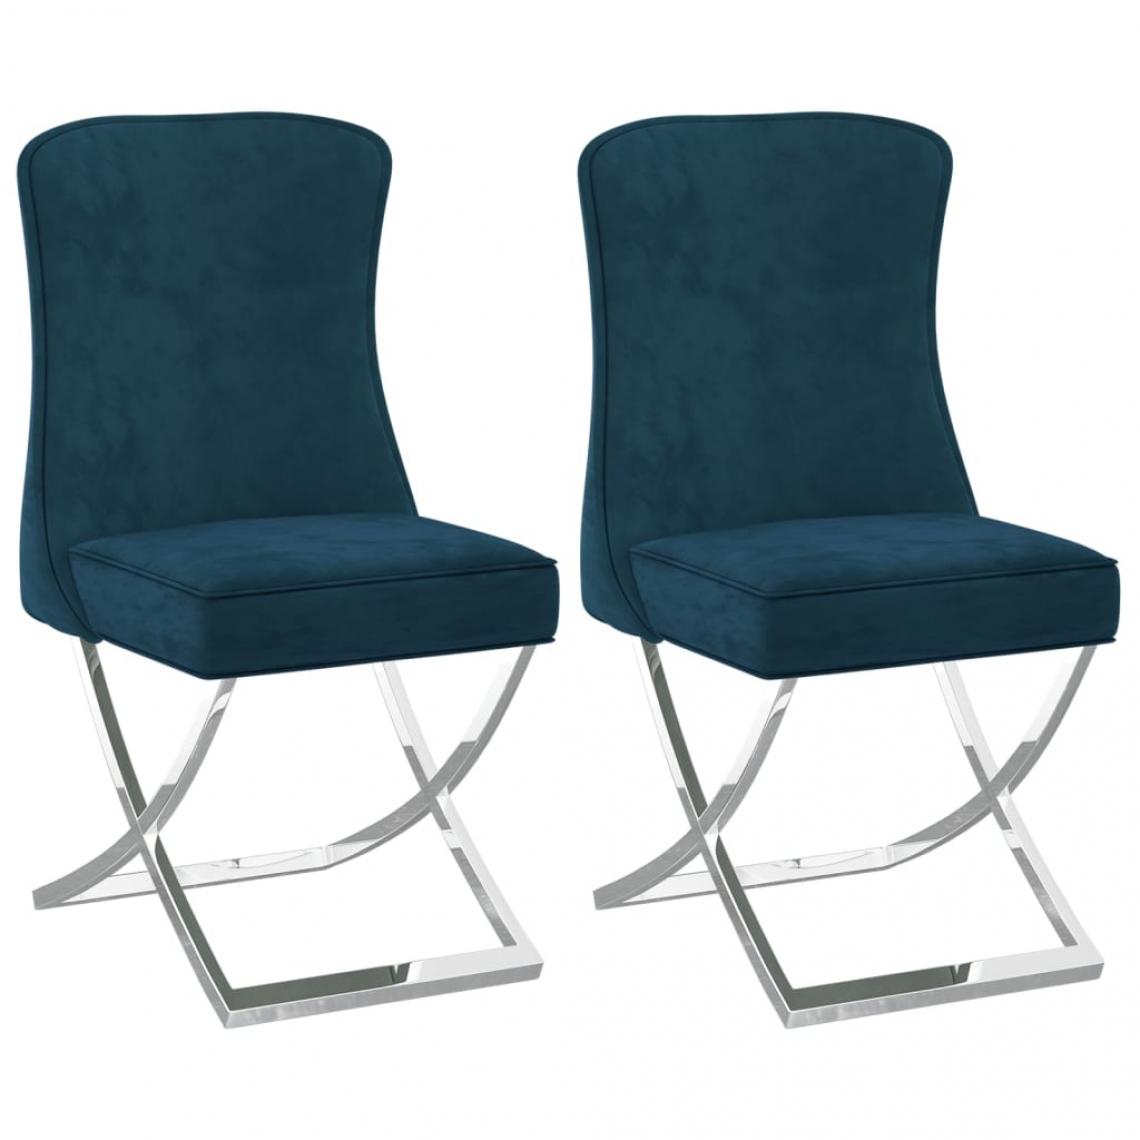 Decoshop26 - Lot de 2 chaises de salle à manger cuisine 53x52x98 cm design moderne velours bleu et inox CDS020208 - Chaises